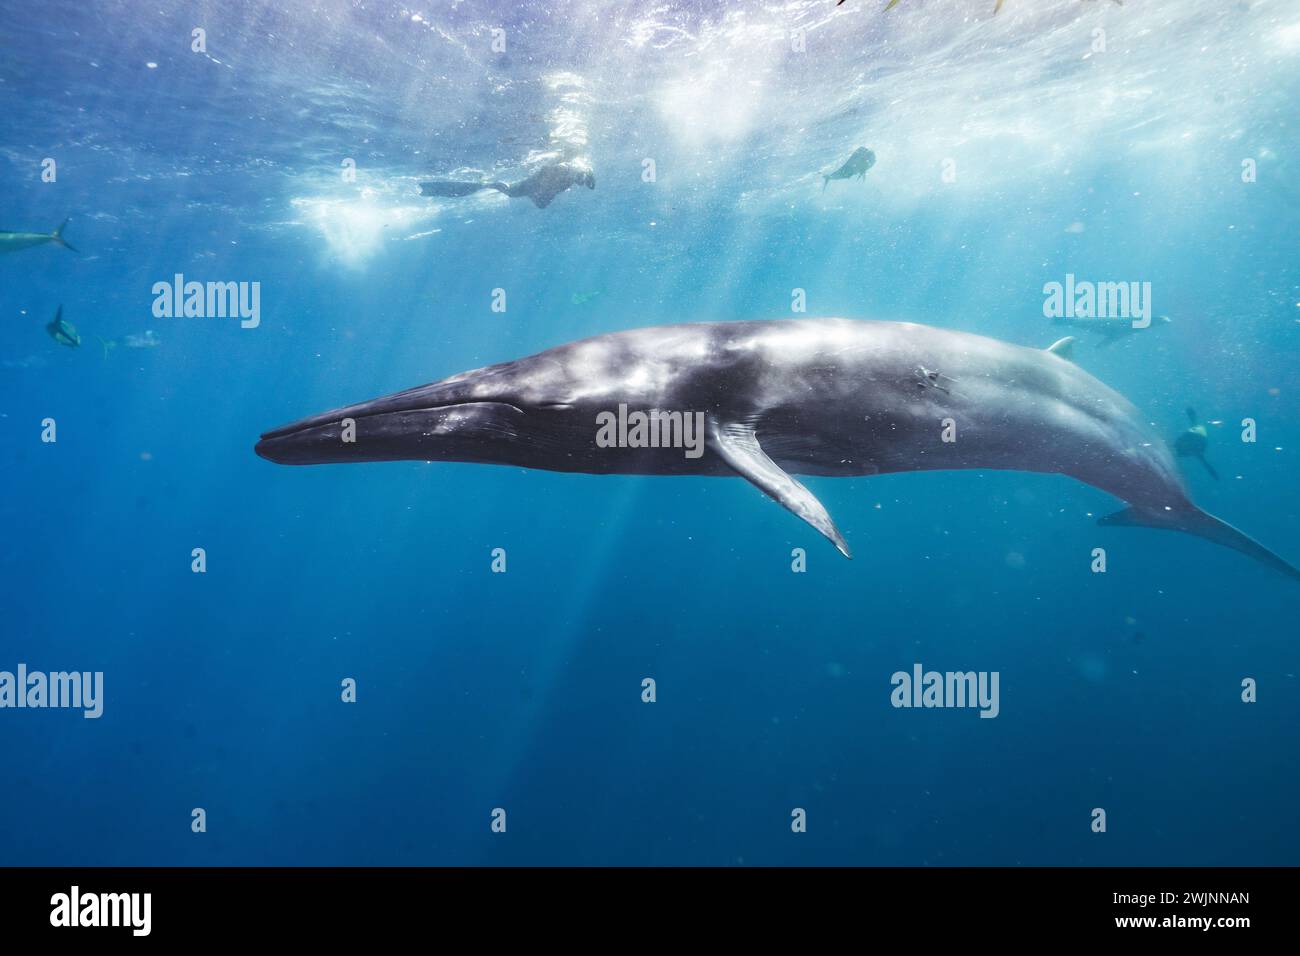 Une majestueuse baleine grise glissant dans l'eau à côté d'une école de petits poissons Banque D'Images